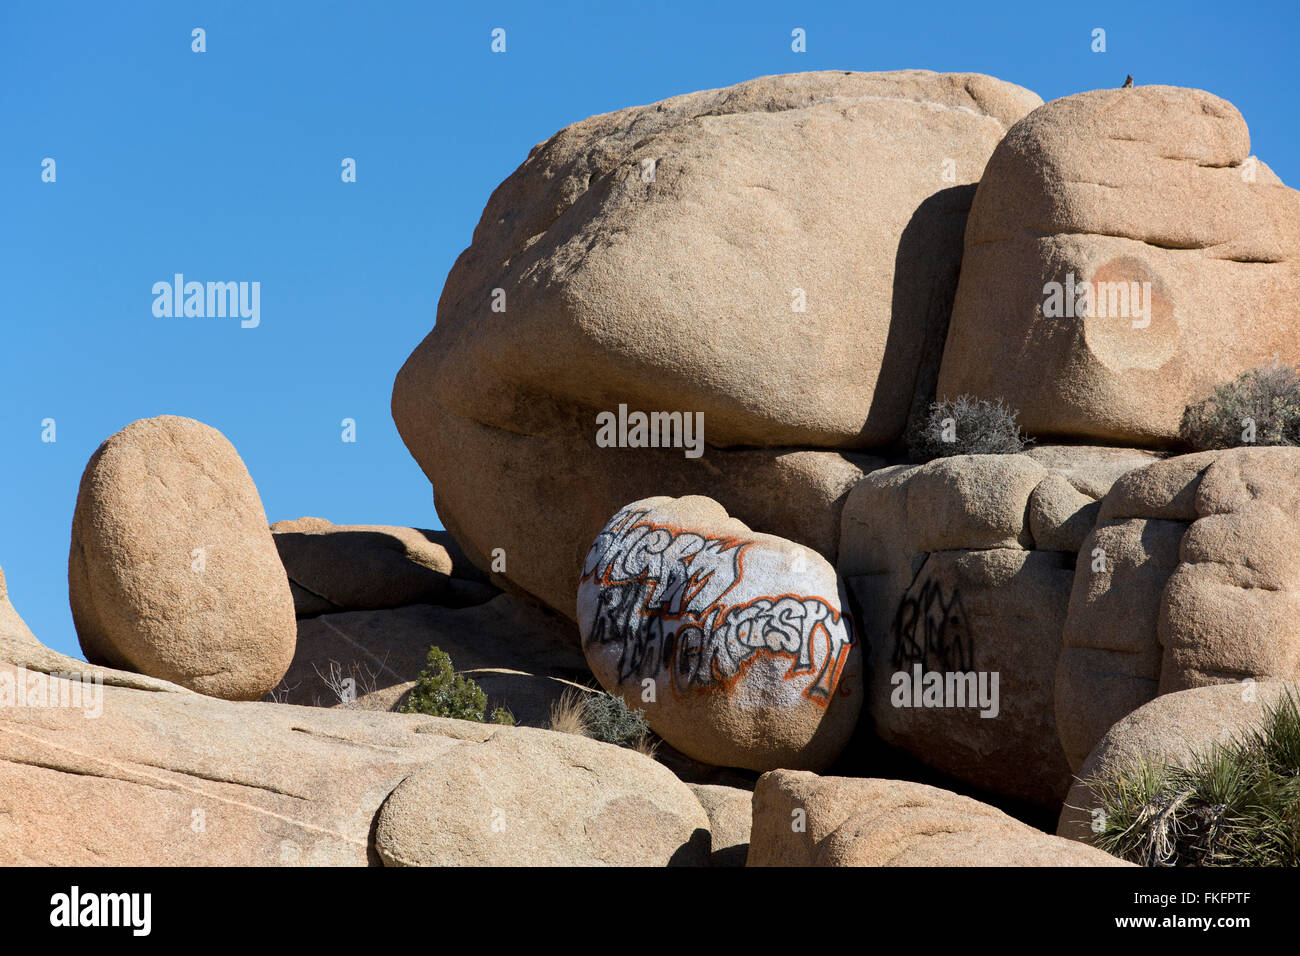 Graffiti auf Felsen, Jumbo Rocks, Joshua Tree Nationalpark, Kalifornien, USA Stockfoto